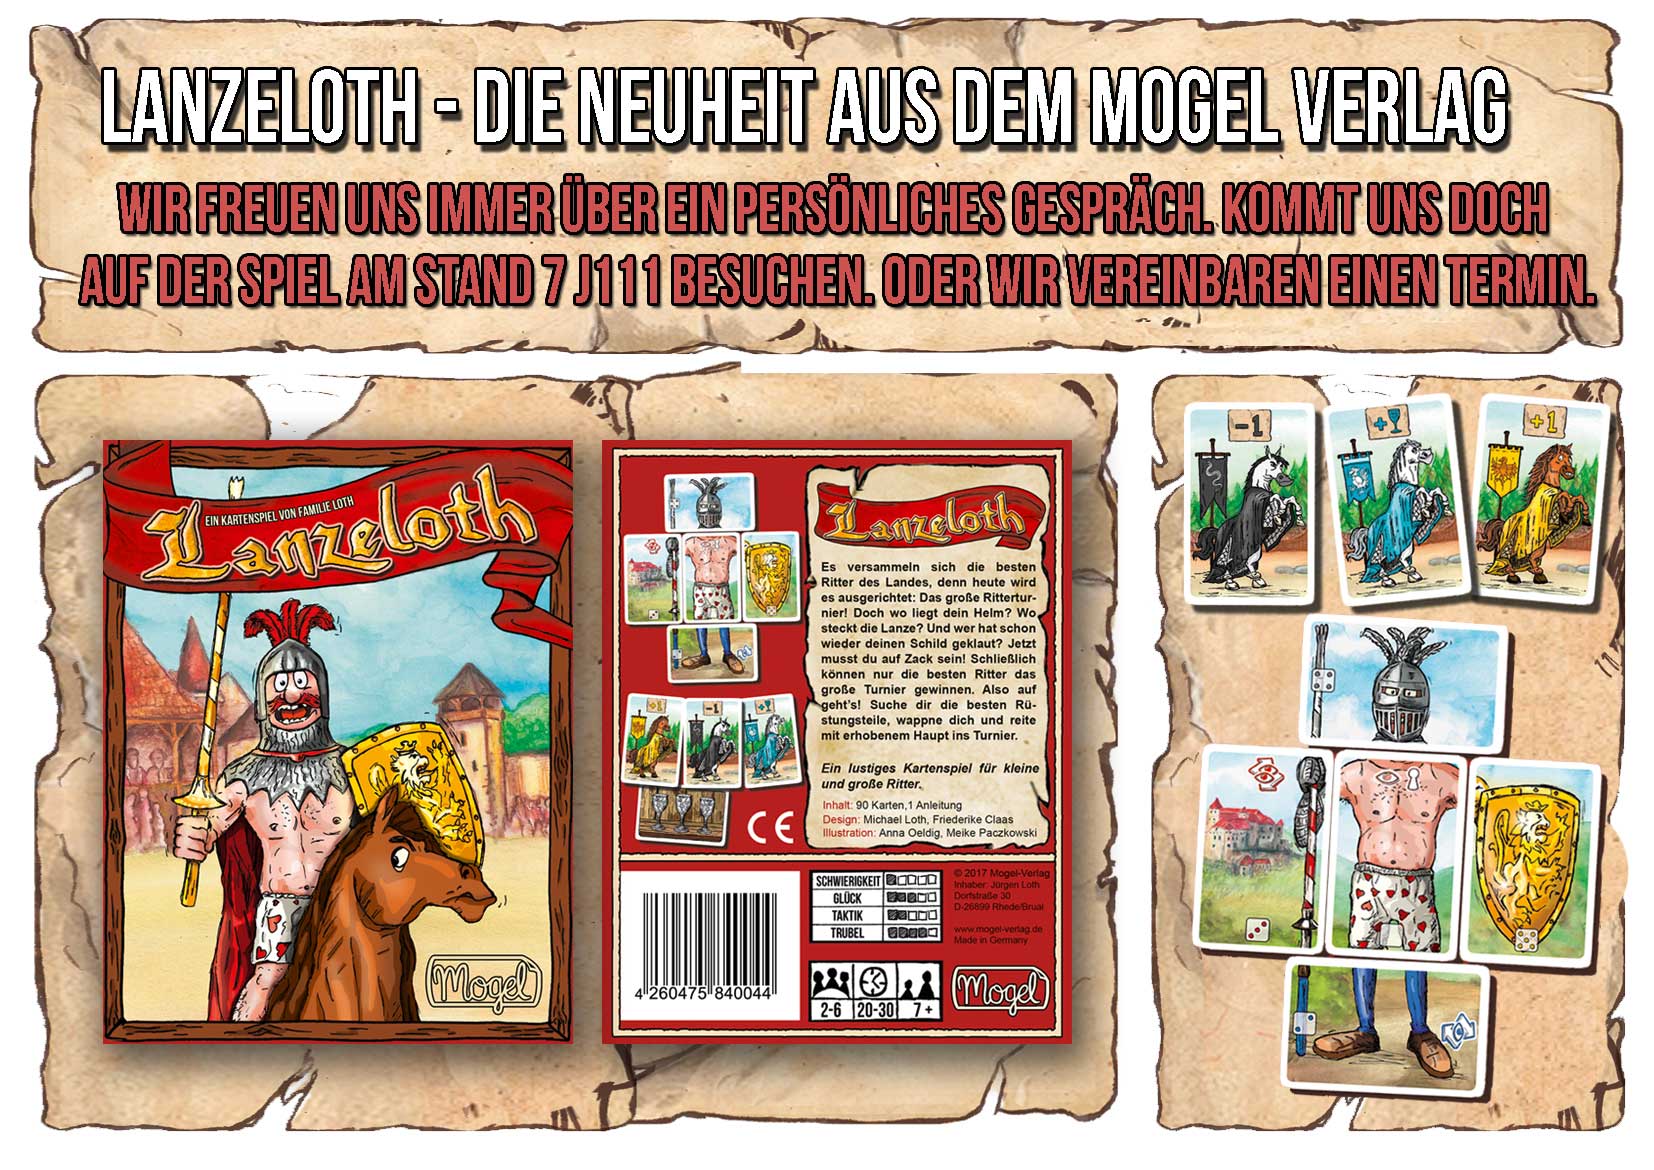 Lanzeloth - Neues Kartenspiel vom Mogel Verlag